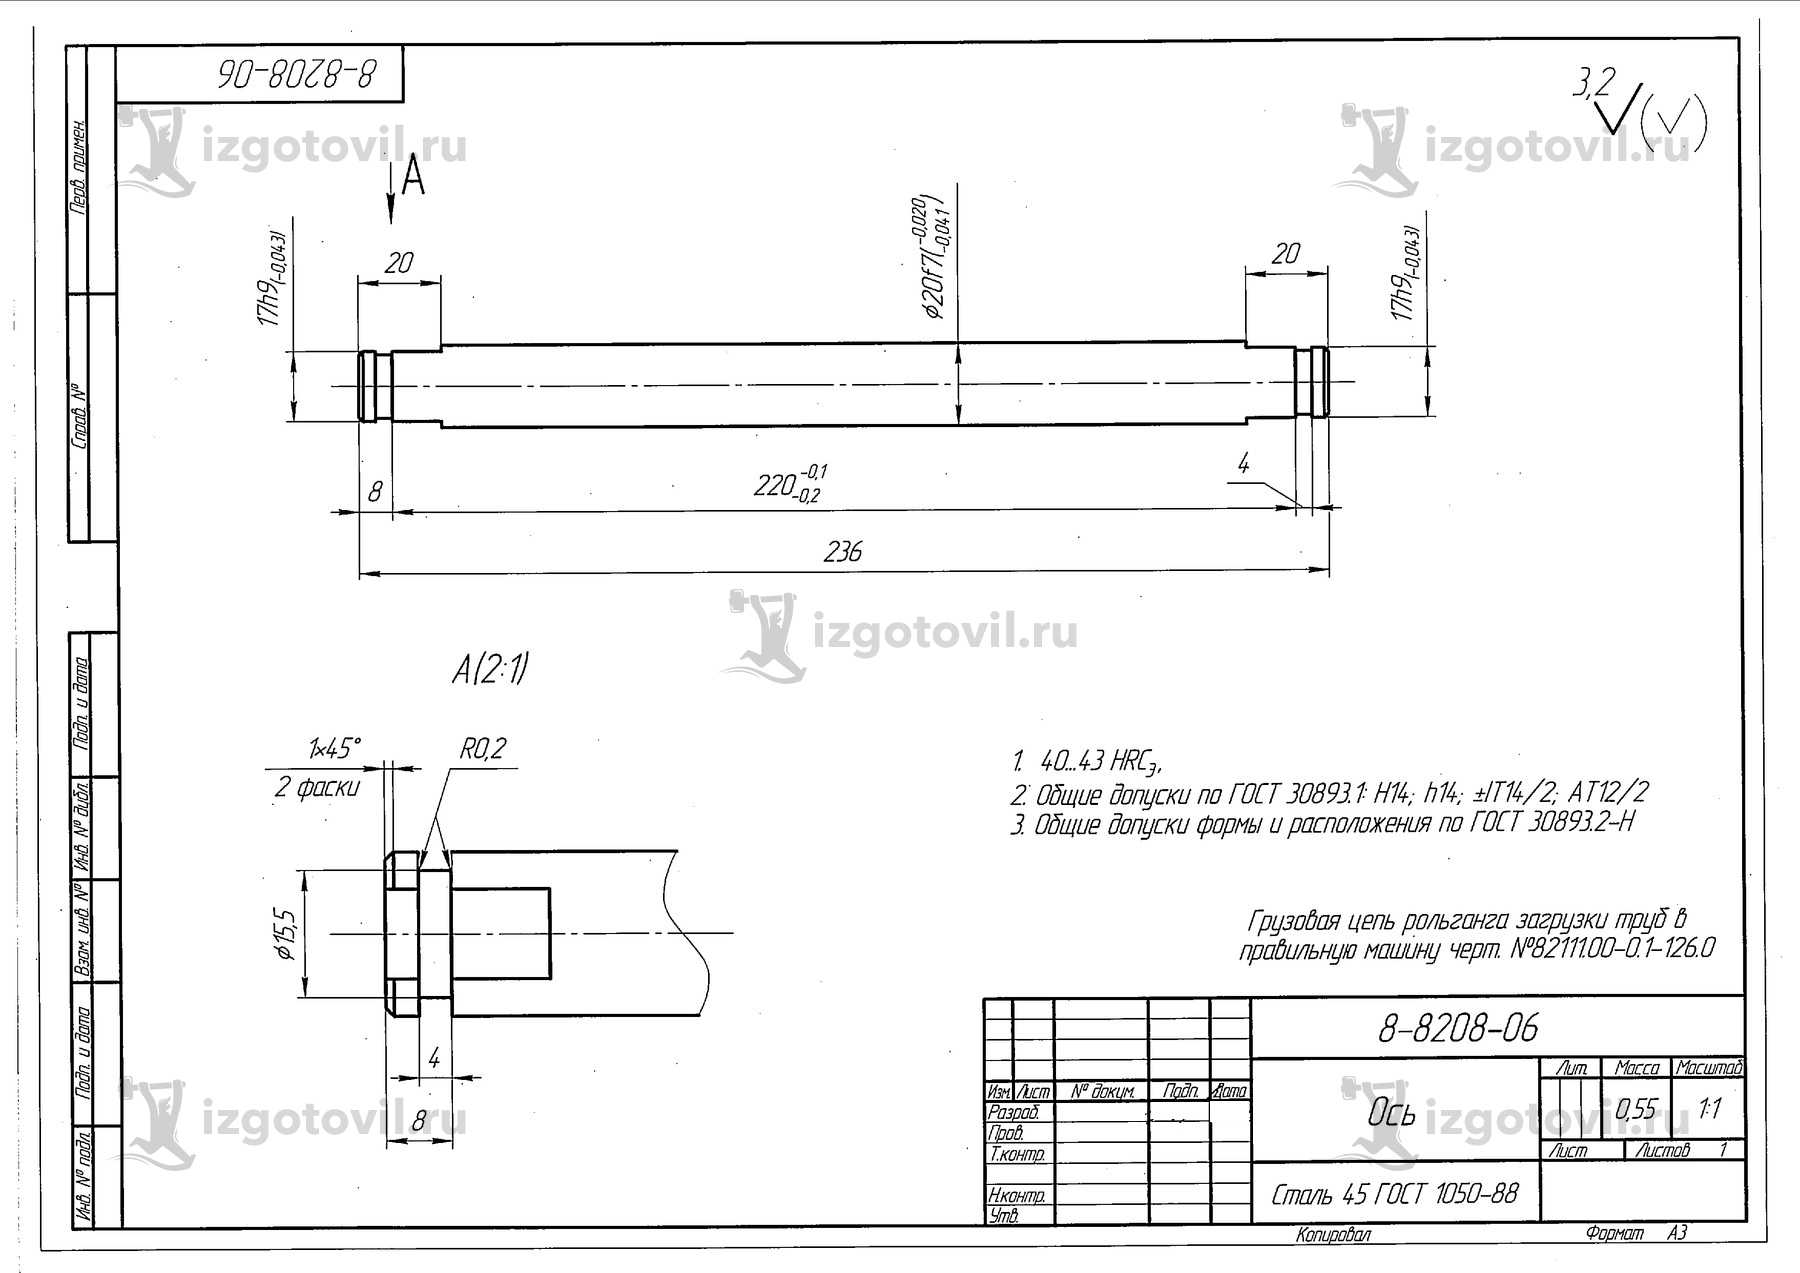 Токарная обработка ЧПУ: изготовление втулки и оси на грузовую цепь.